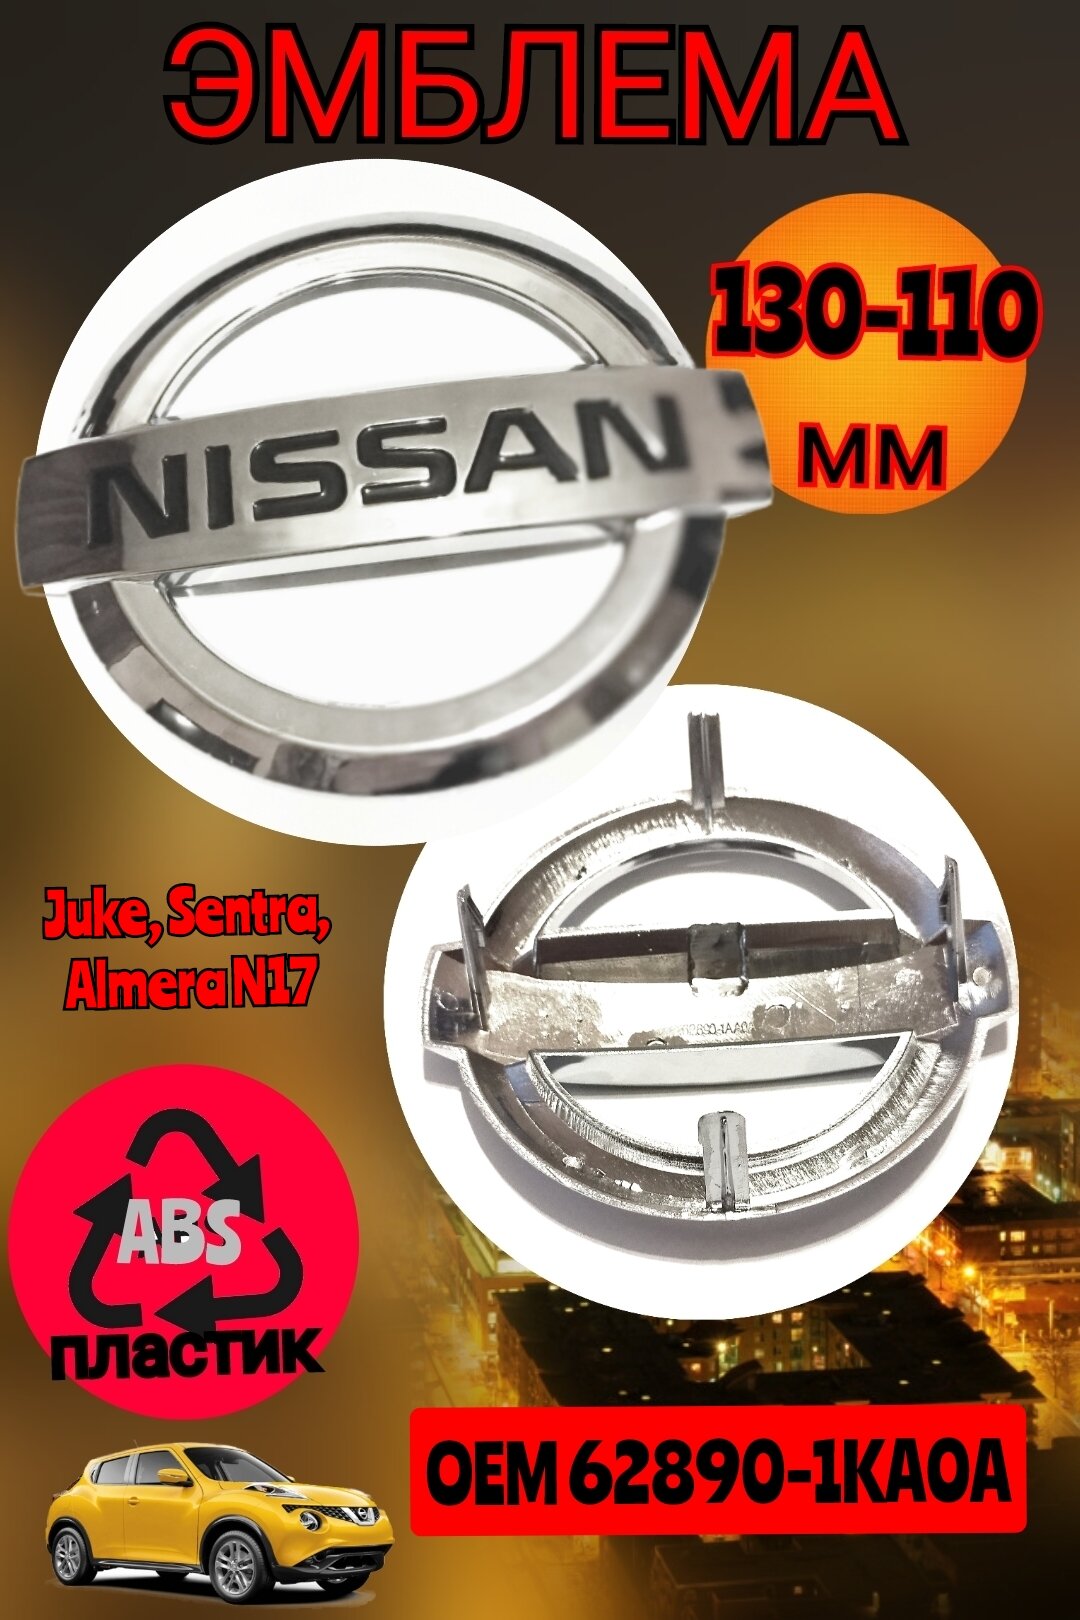 Эмблема ( орнамент, шильдик ) на решетку радиатора для автомобиля Ниссан Nissan 130х110 мм цвет хром